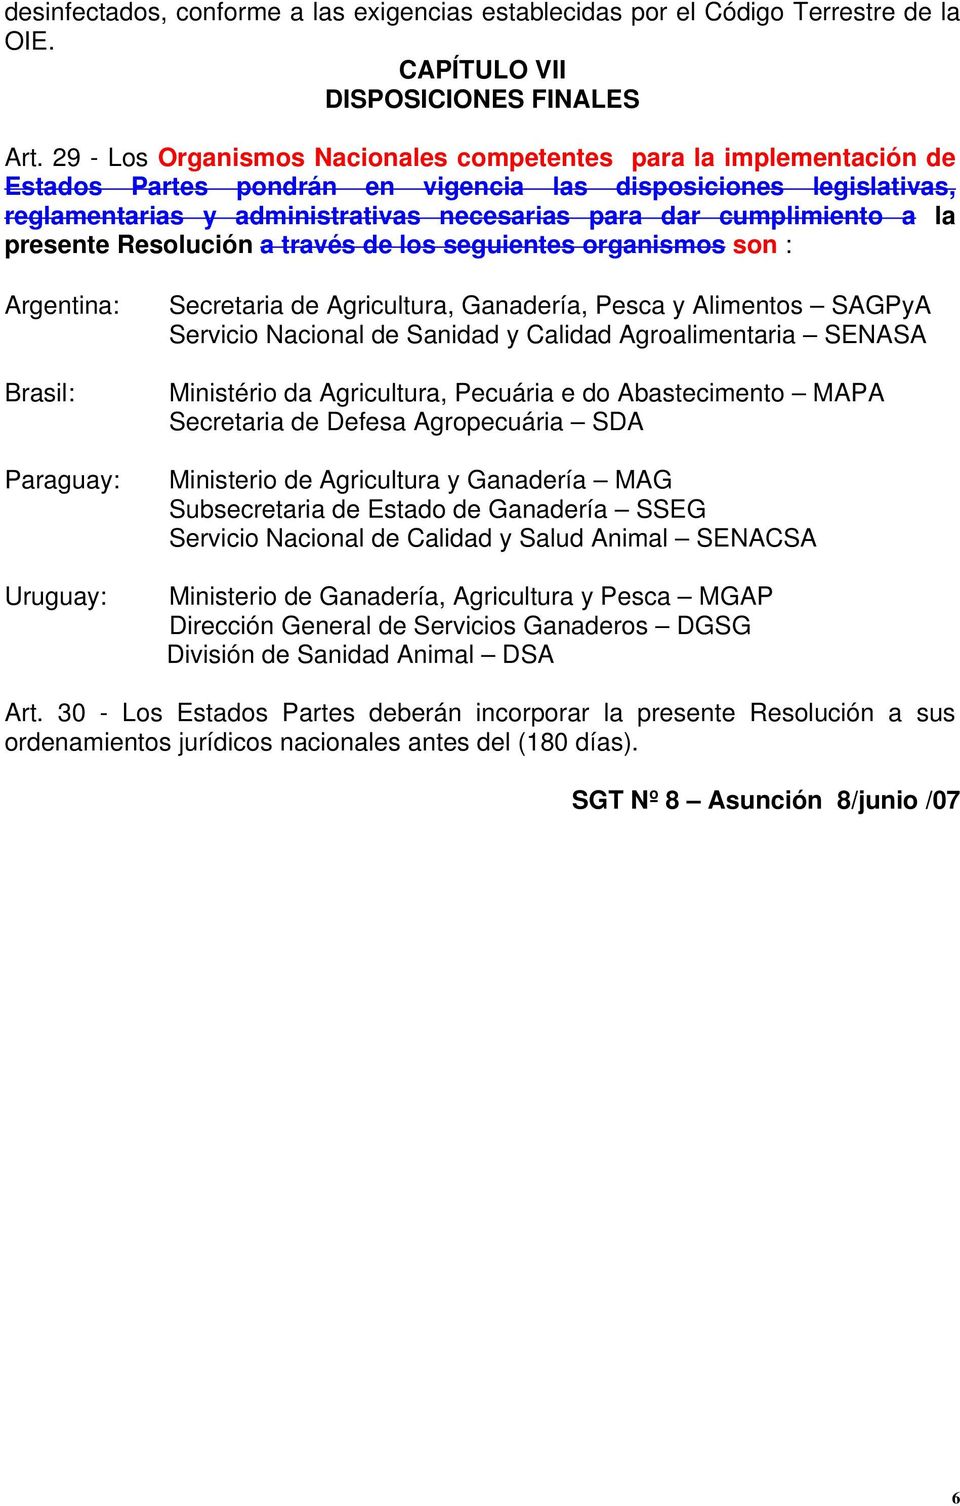 cumplimiento a la presente Resolución a través de los seguientes organismos son : Argentina: Brasil: Paraguay: Uruguay: Secretaria de Agricultura, Ganadería, Pesca y Alimentos SAGPyA Servicio